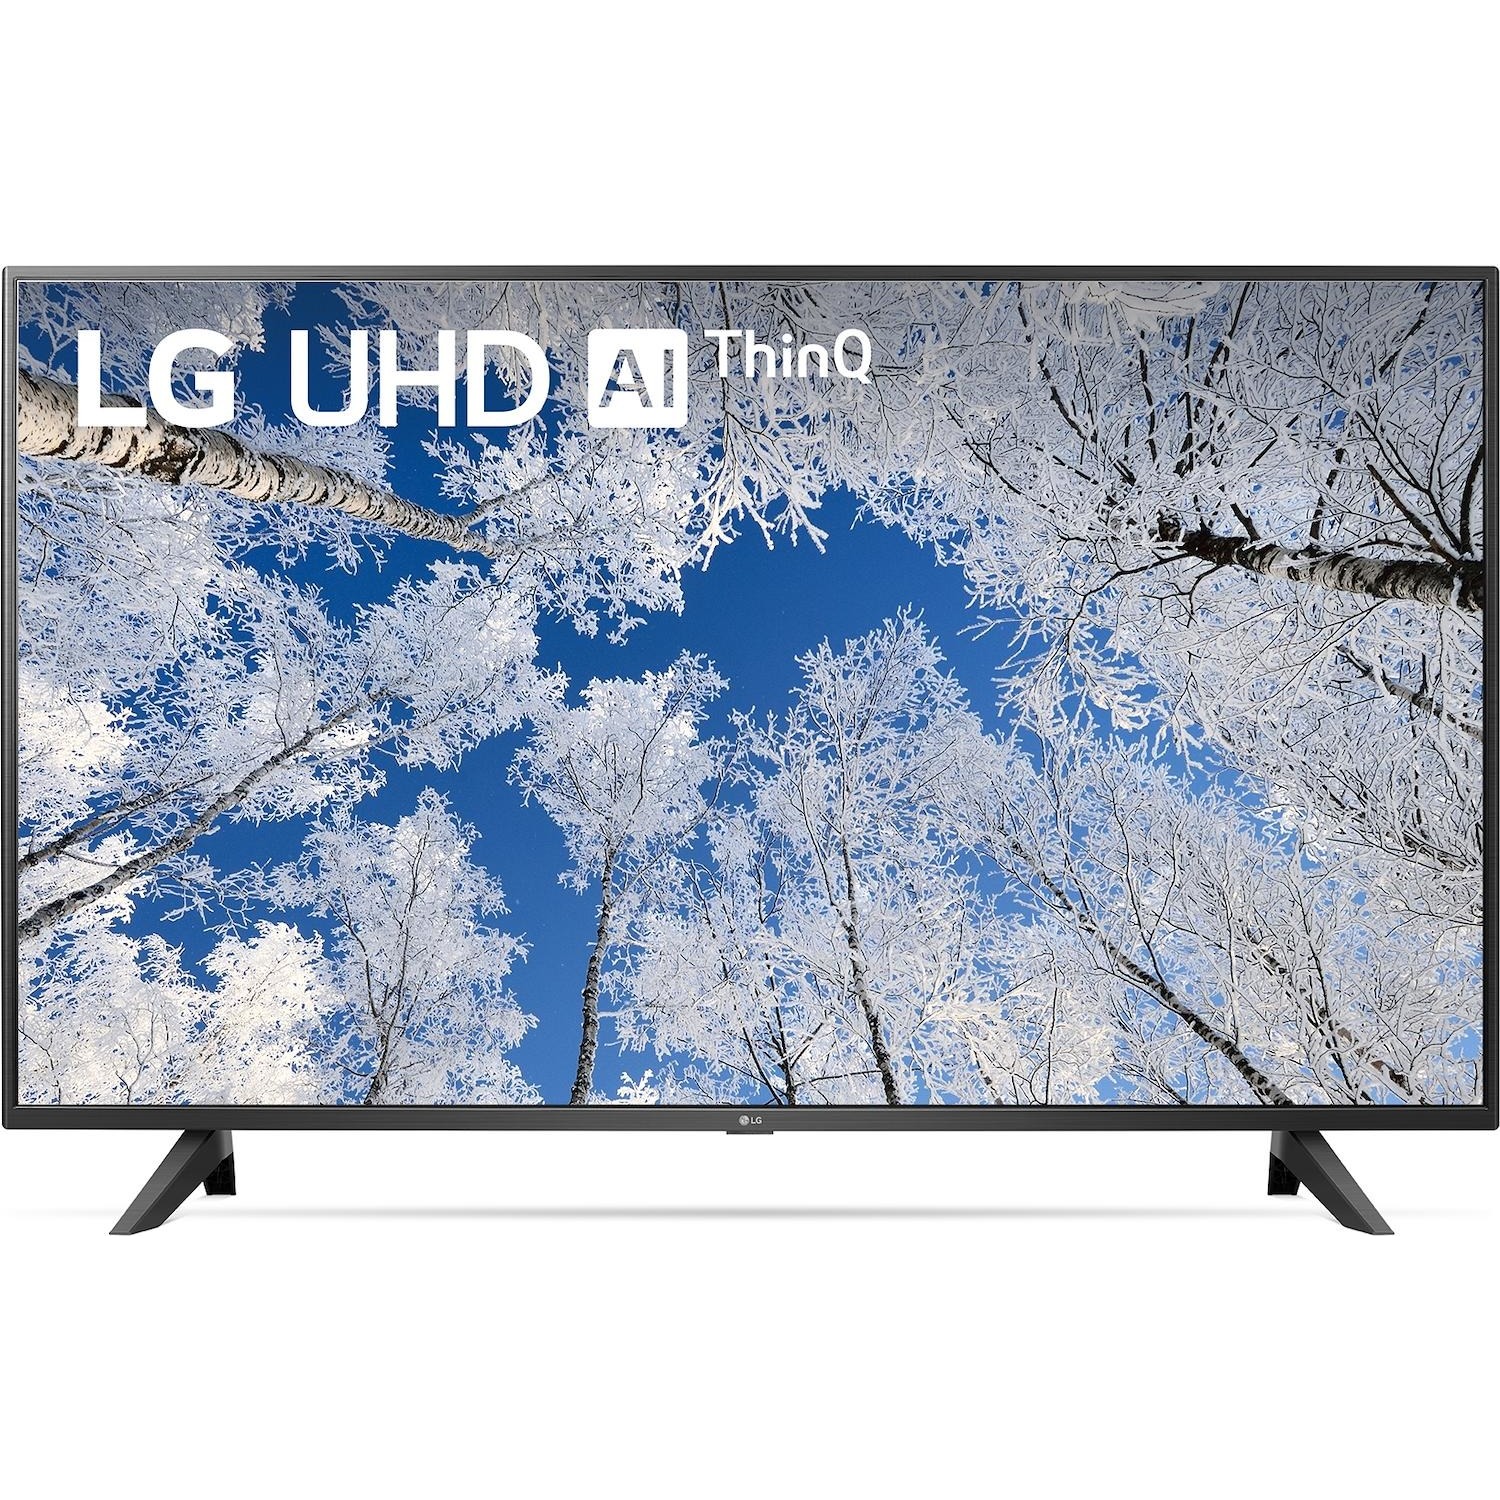 Immagine per TV LED Smart 4K UHD LG 55UQ70006 da DIMOStore